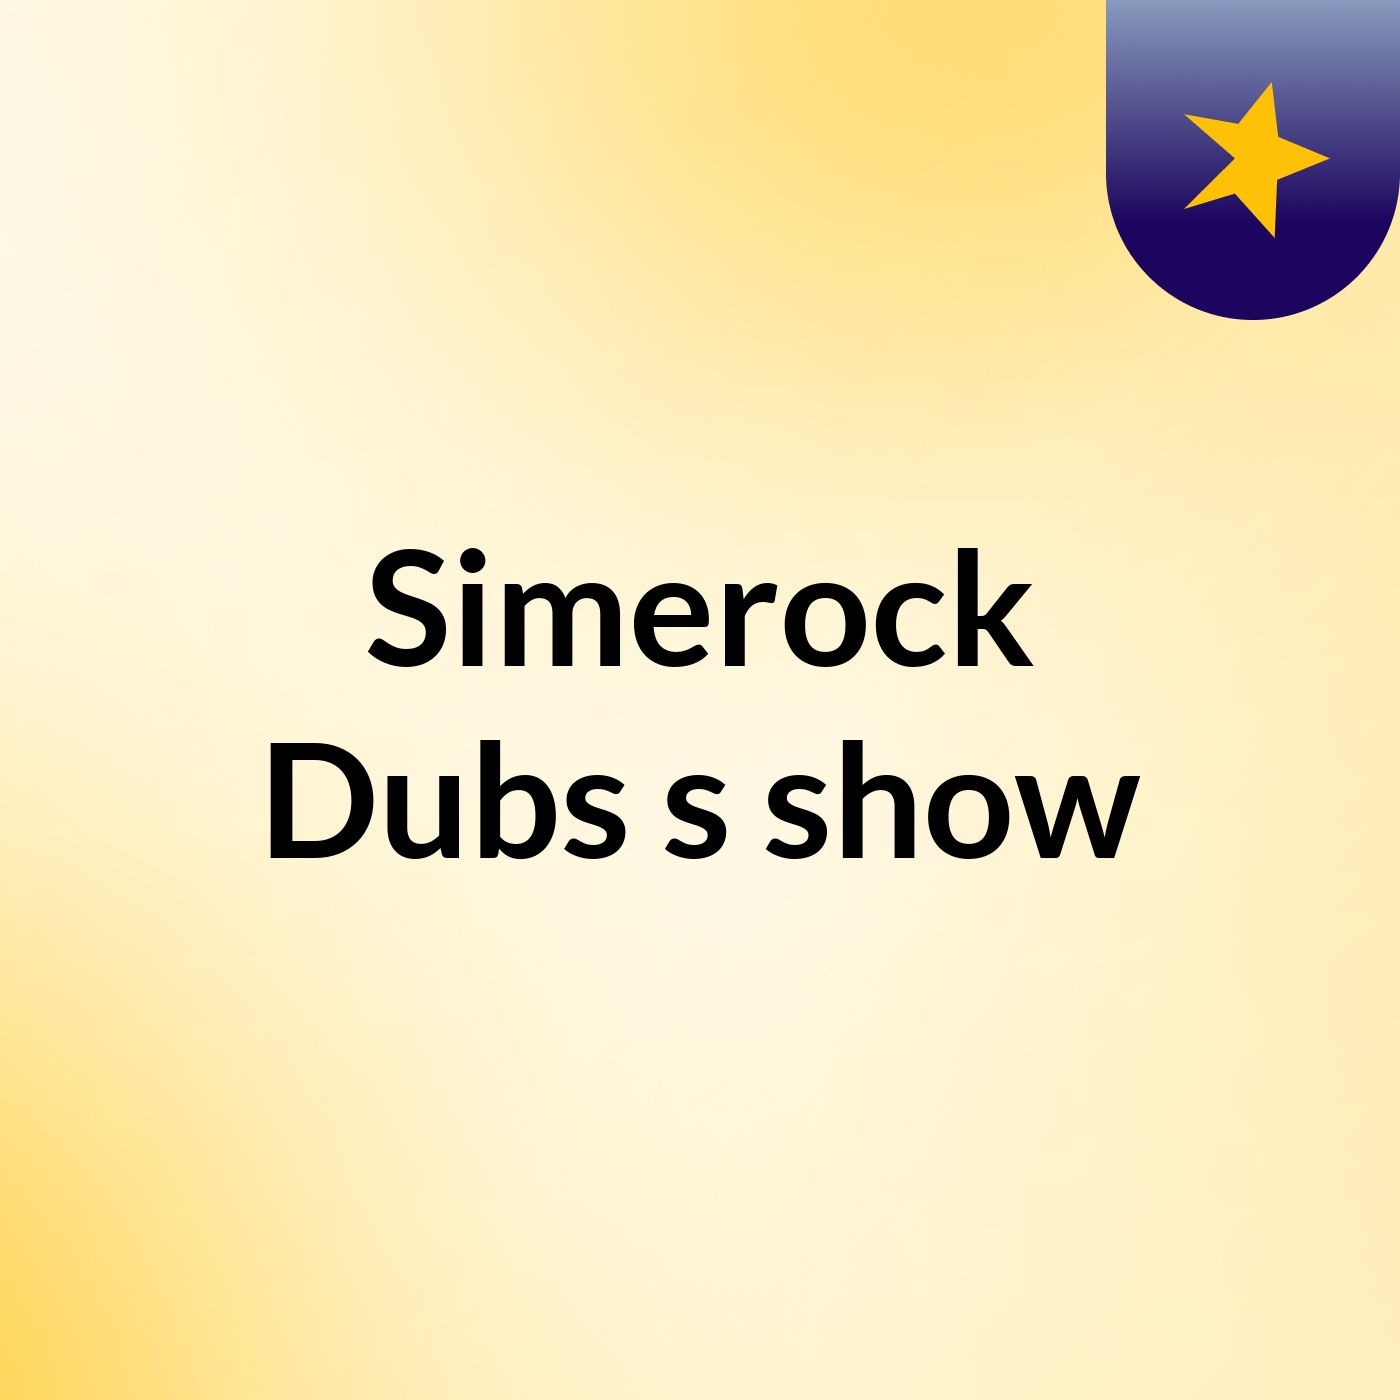 Simerock Dubs's show